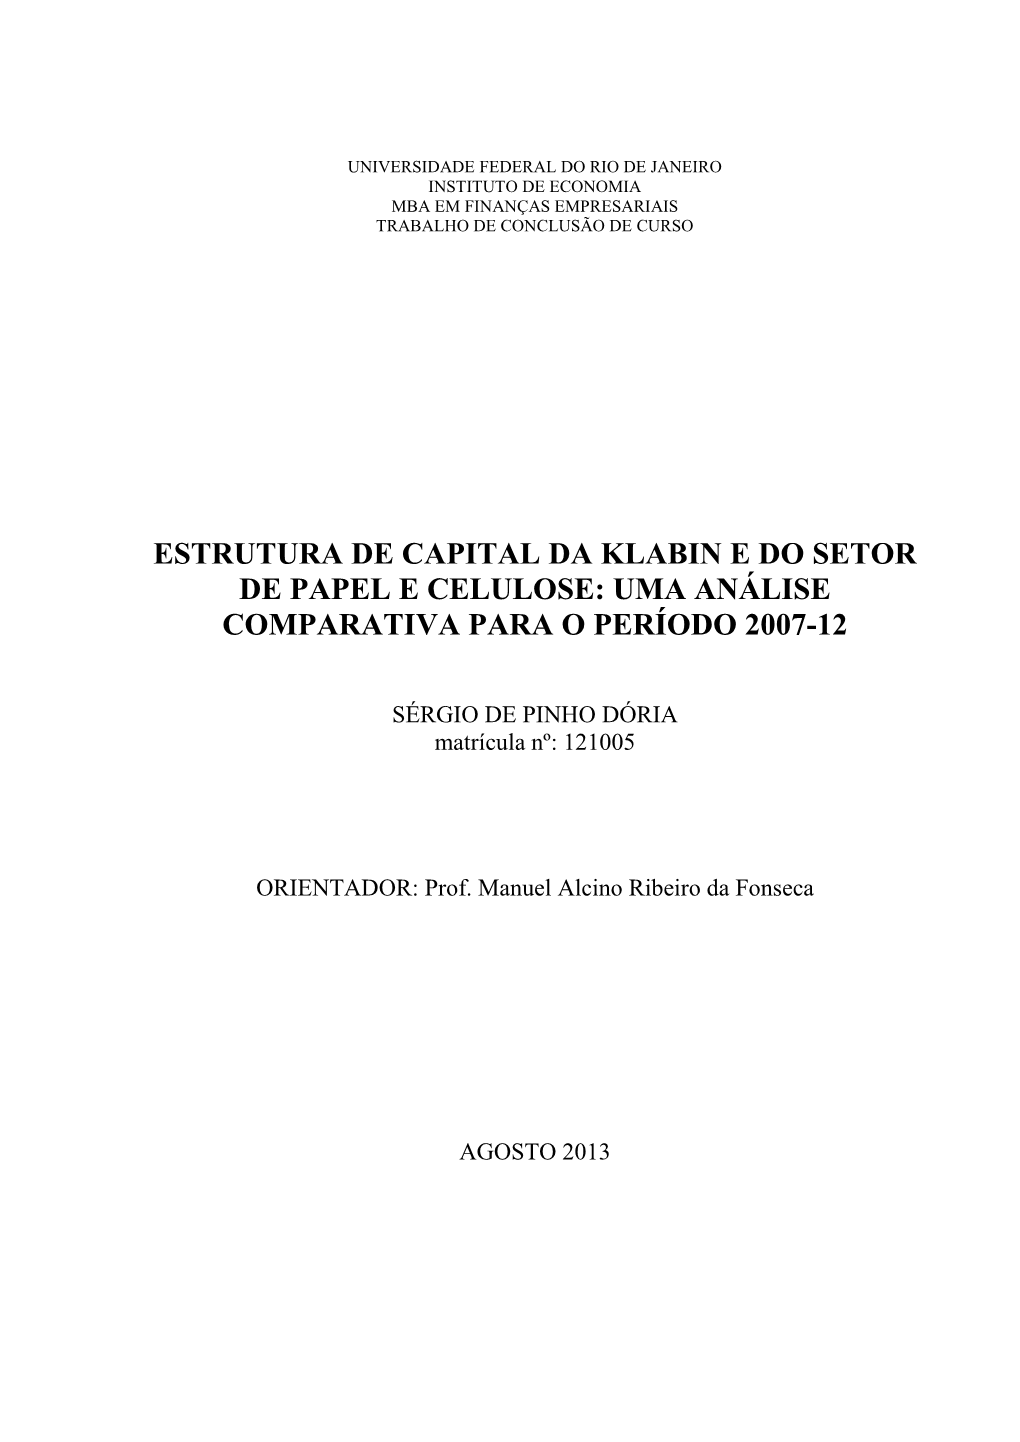 Estrutura De Capital Da Klabin E Do Setor De Papel E Celulose: Uma Análise Comparativa Para O Período 2007-12